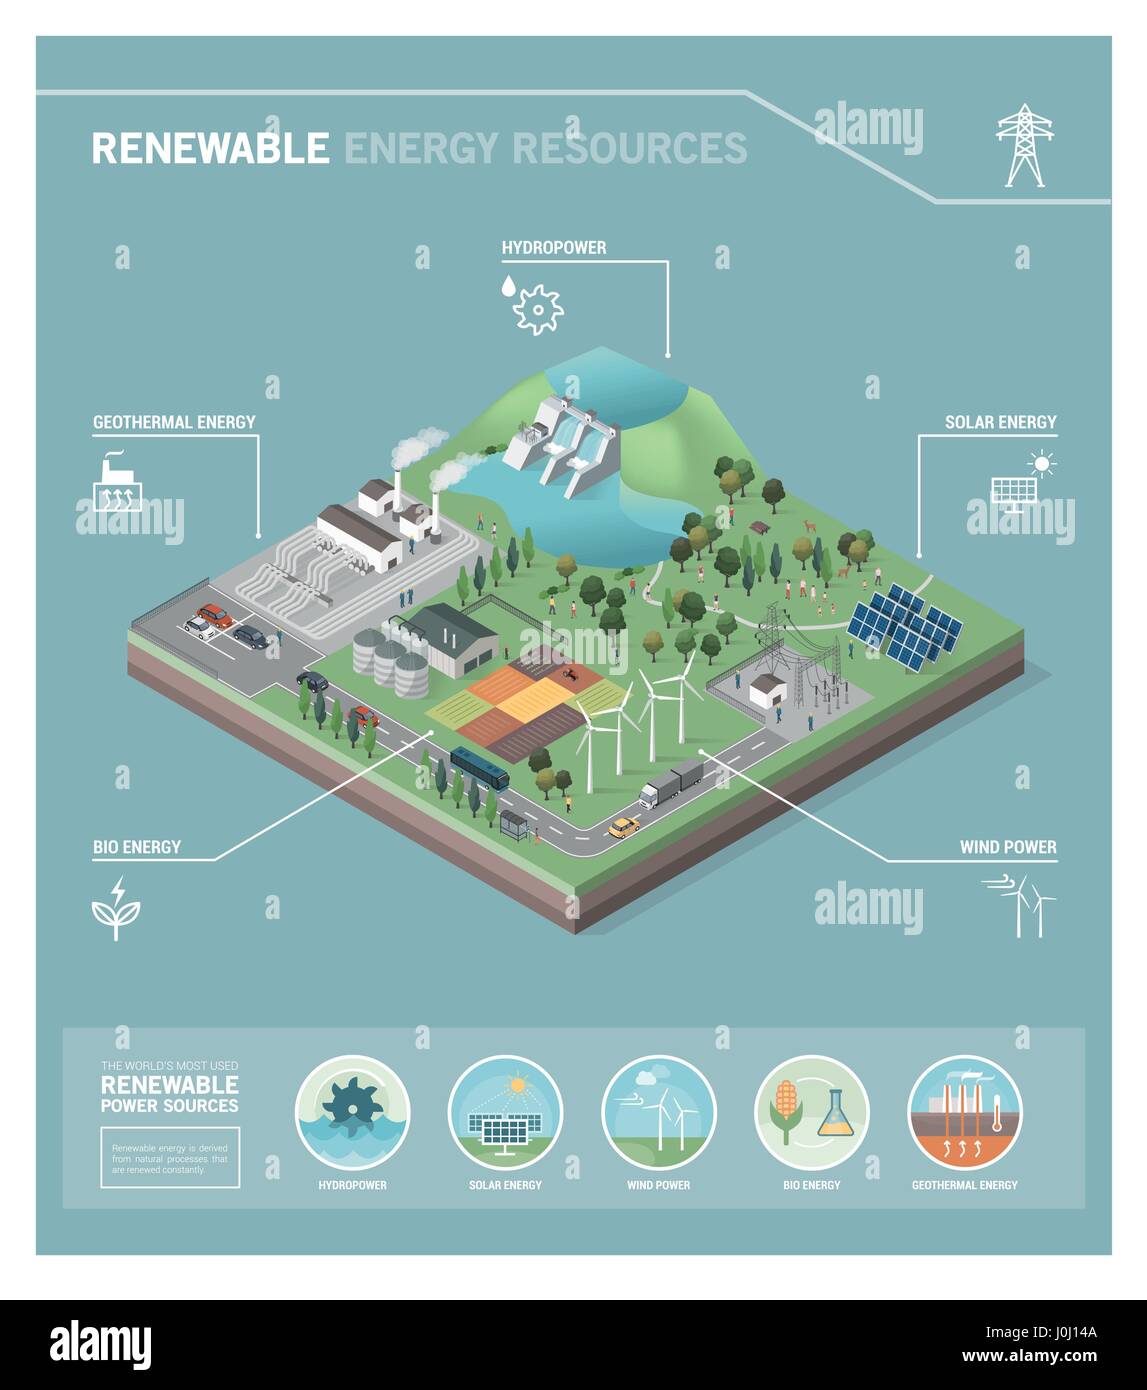 La producción de energía verde y los recursos renovables de energía: energía hidroeléctrica, geotérmica, bioenergía, energía eólica y paneles solares fotovoltaicos Ilustración del Vector